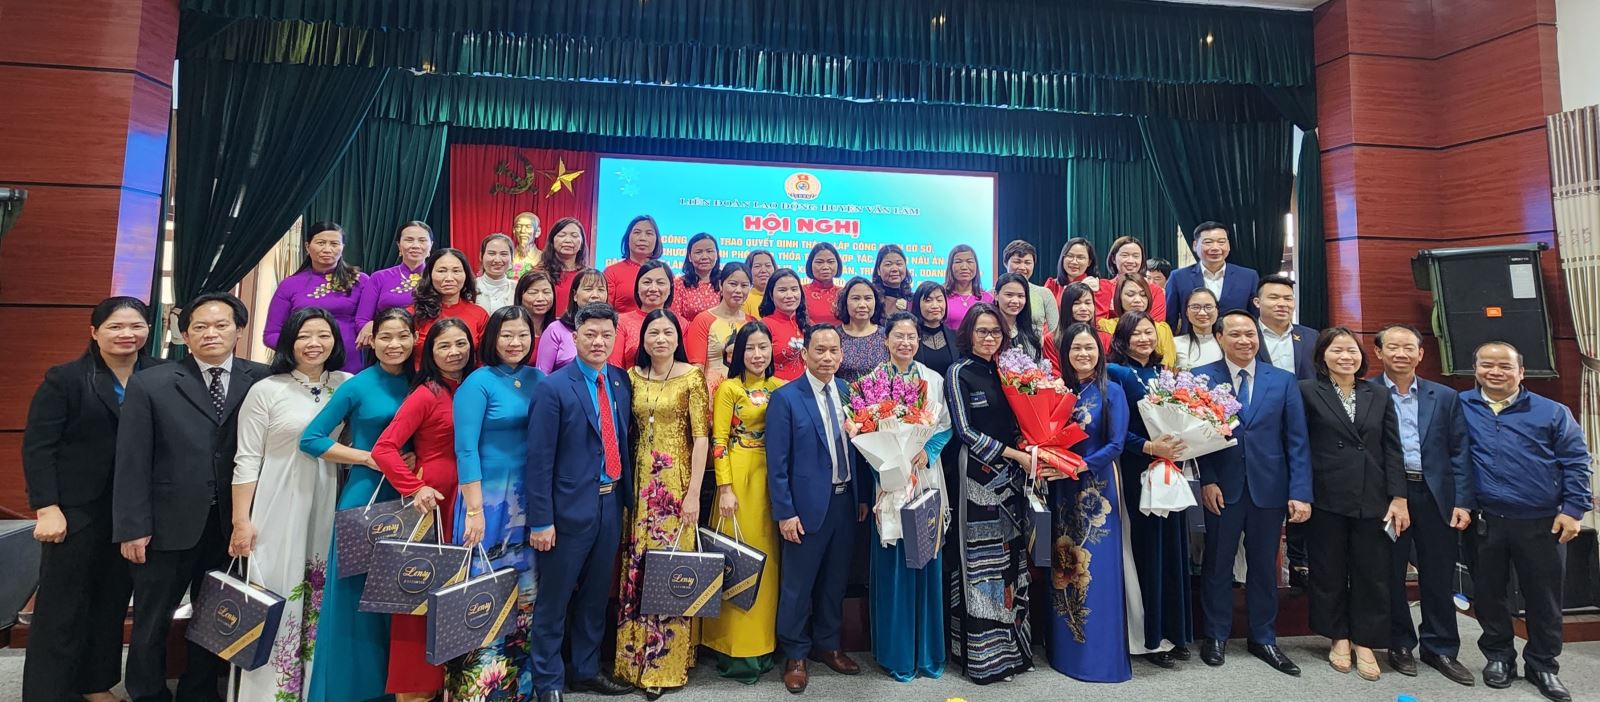 Liên đoàn lao động huyện Văn Lâm tổ chức chuỗi hoạt động chào mừng ngày Quốc tế phụ nữ mồng 8/3/2023.